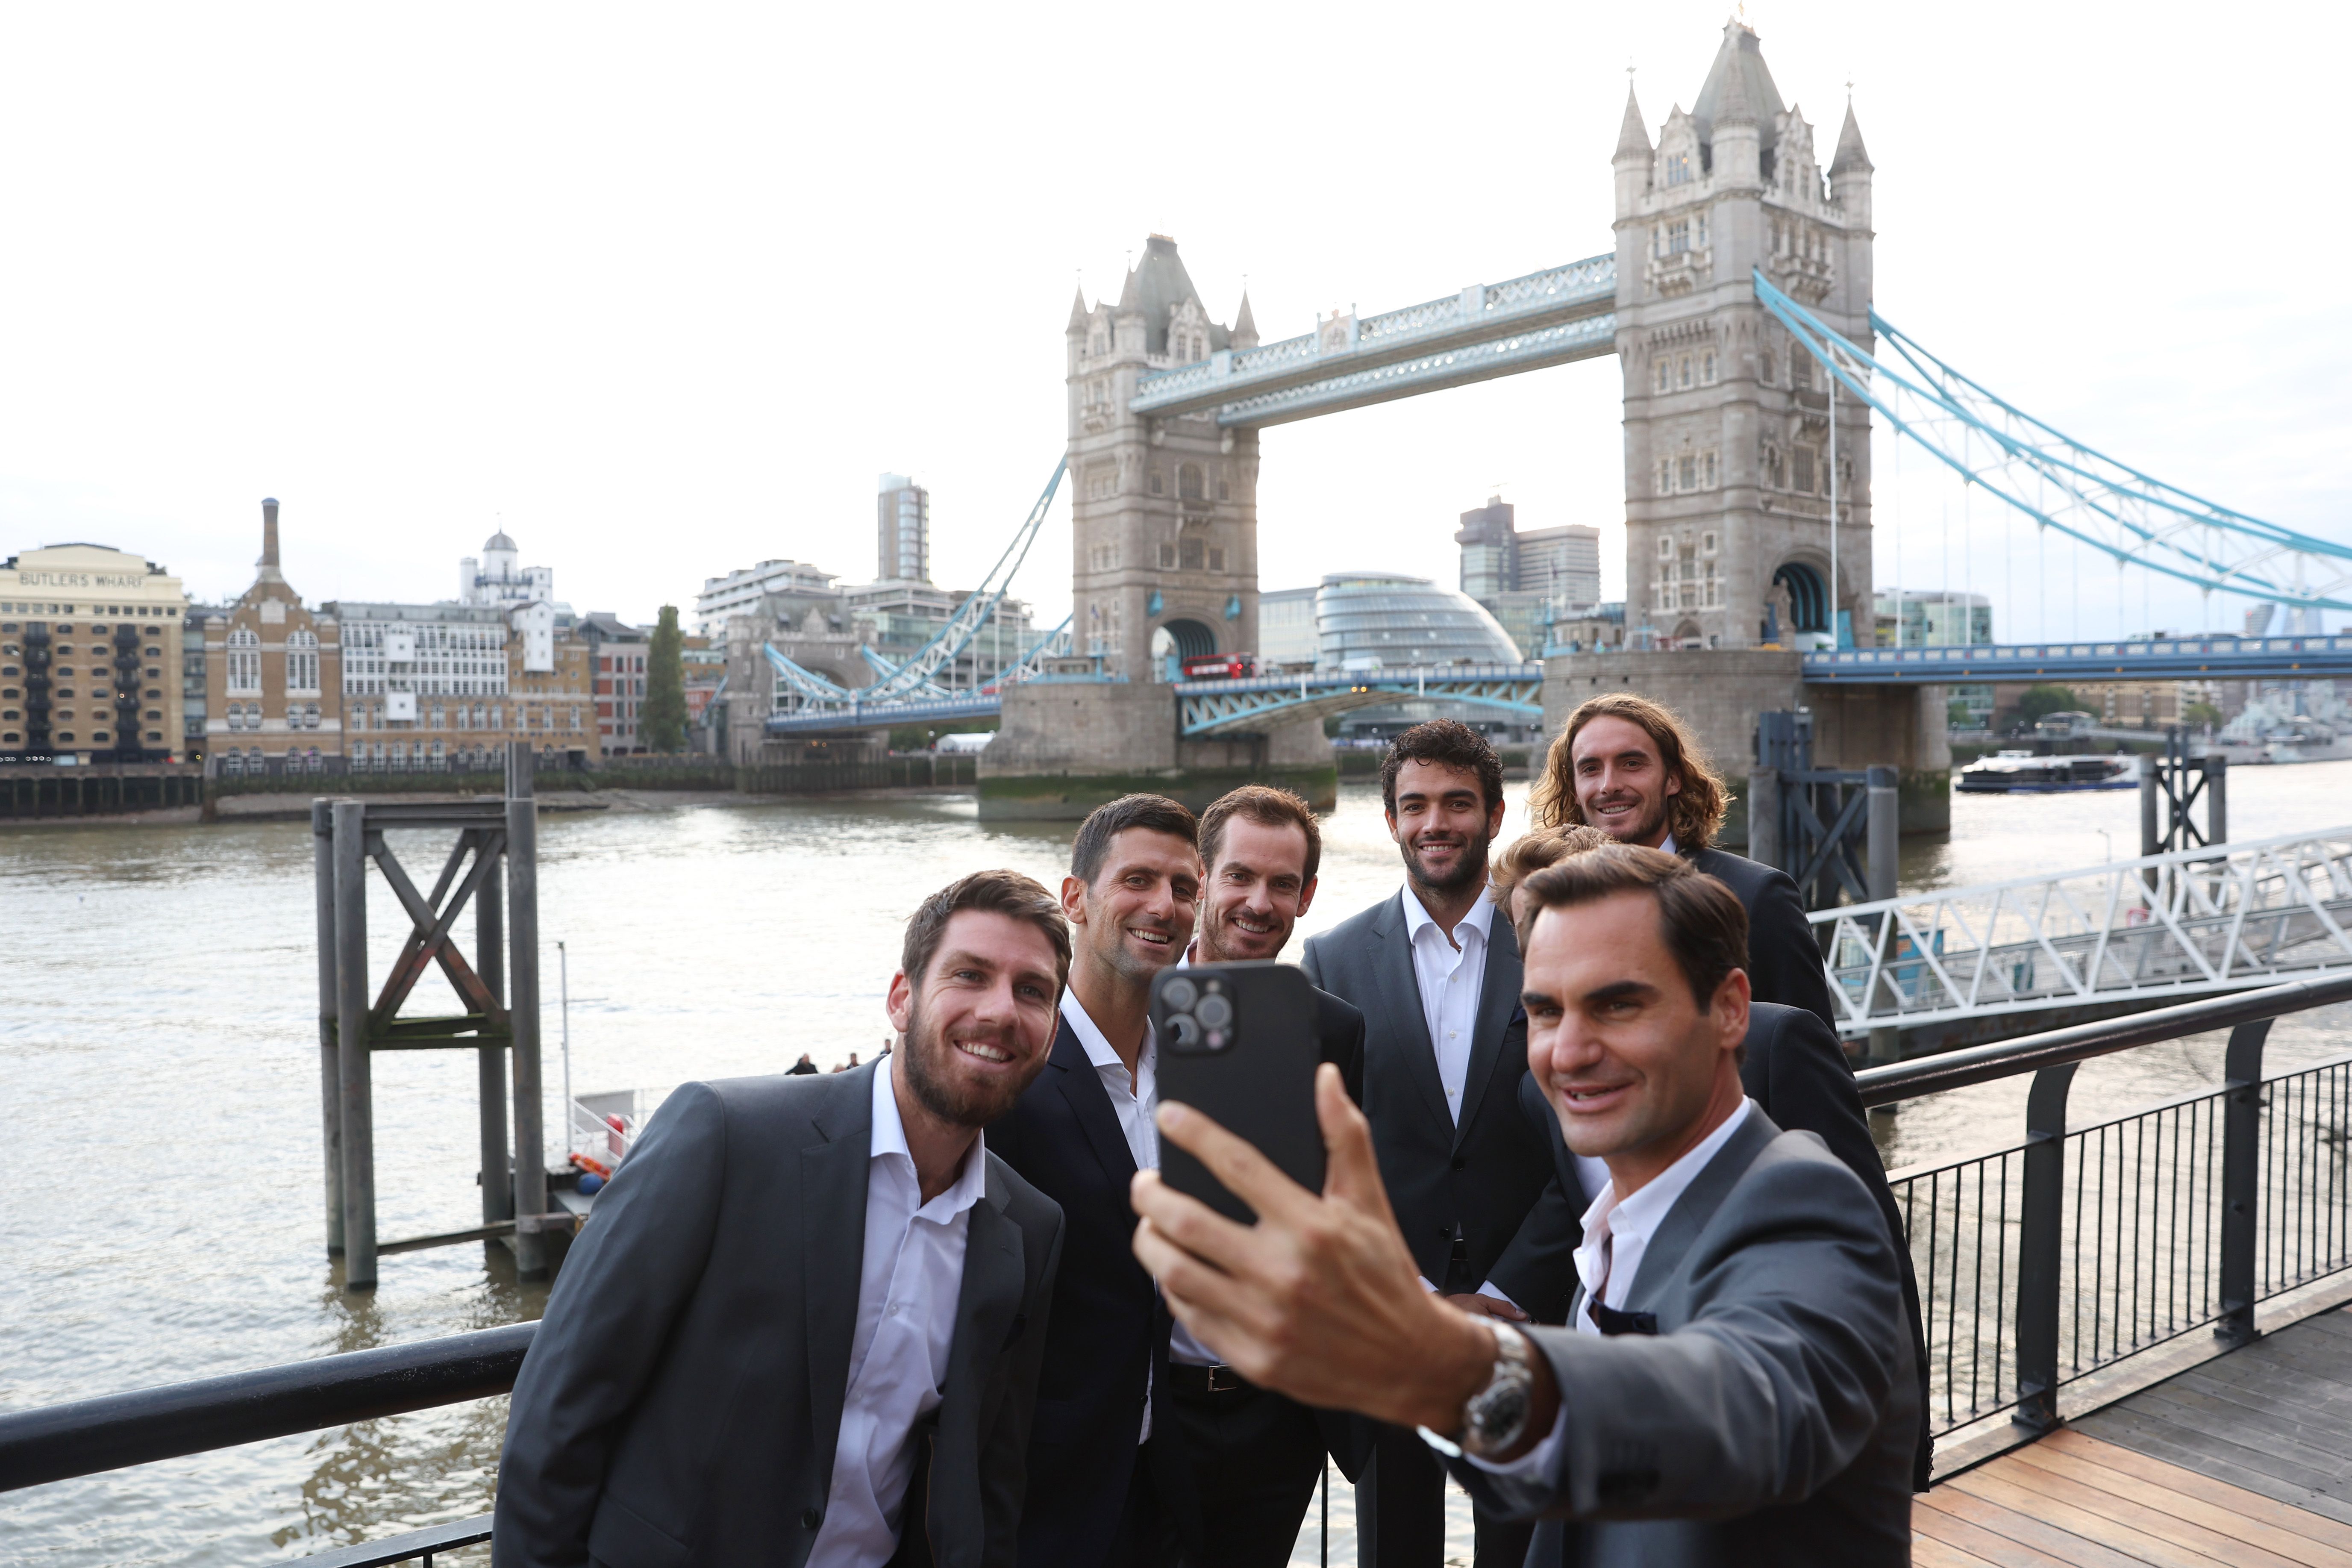 Roger Federer taking a photo